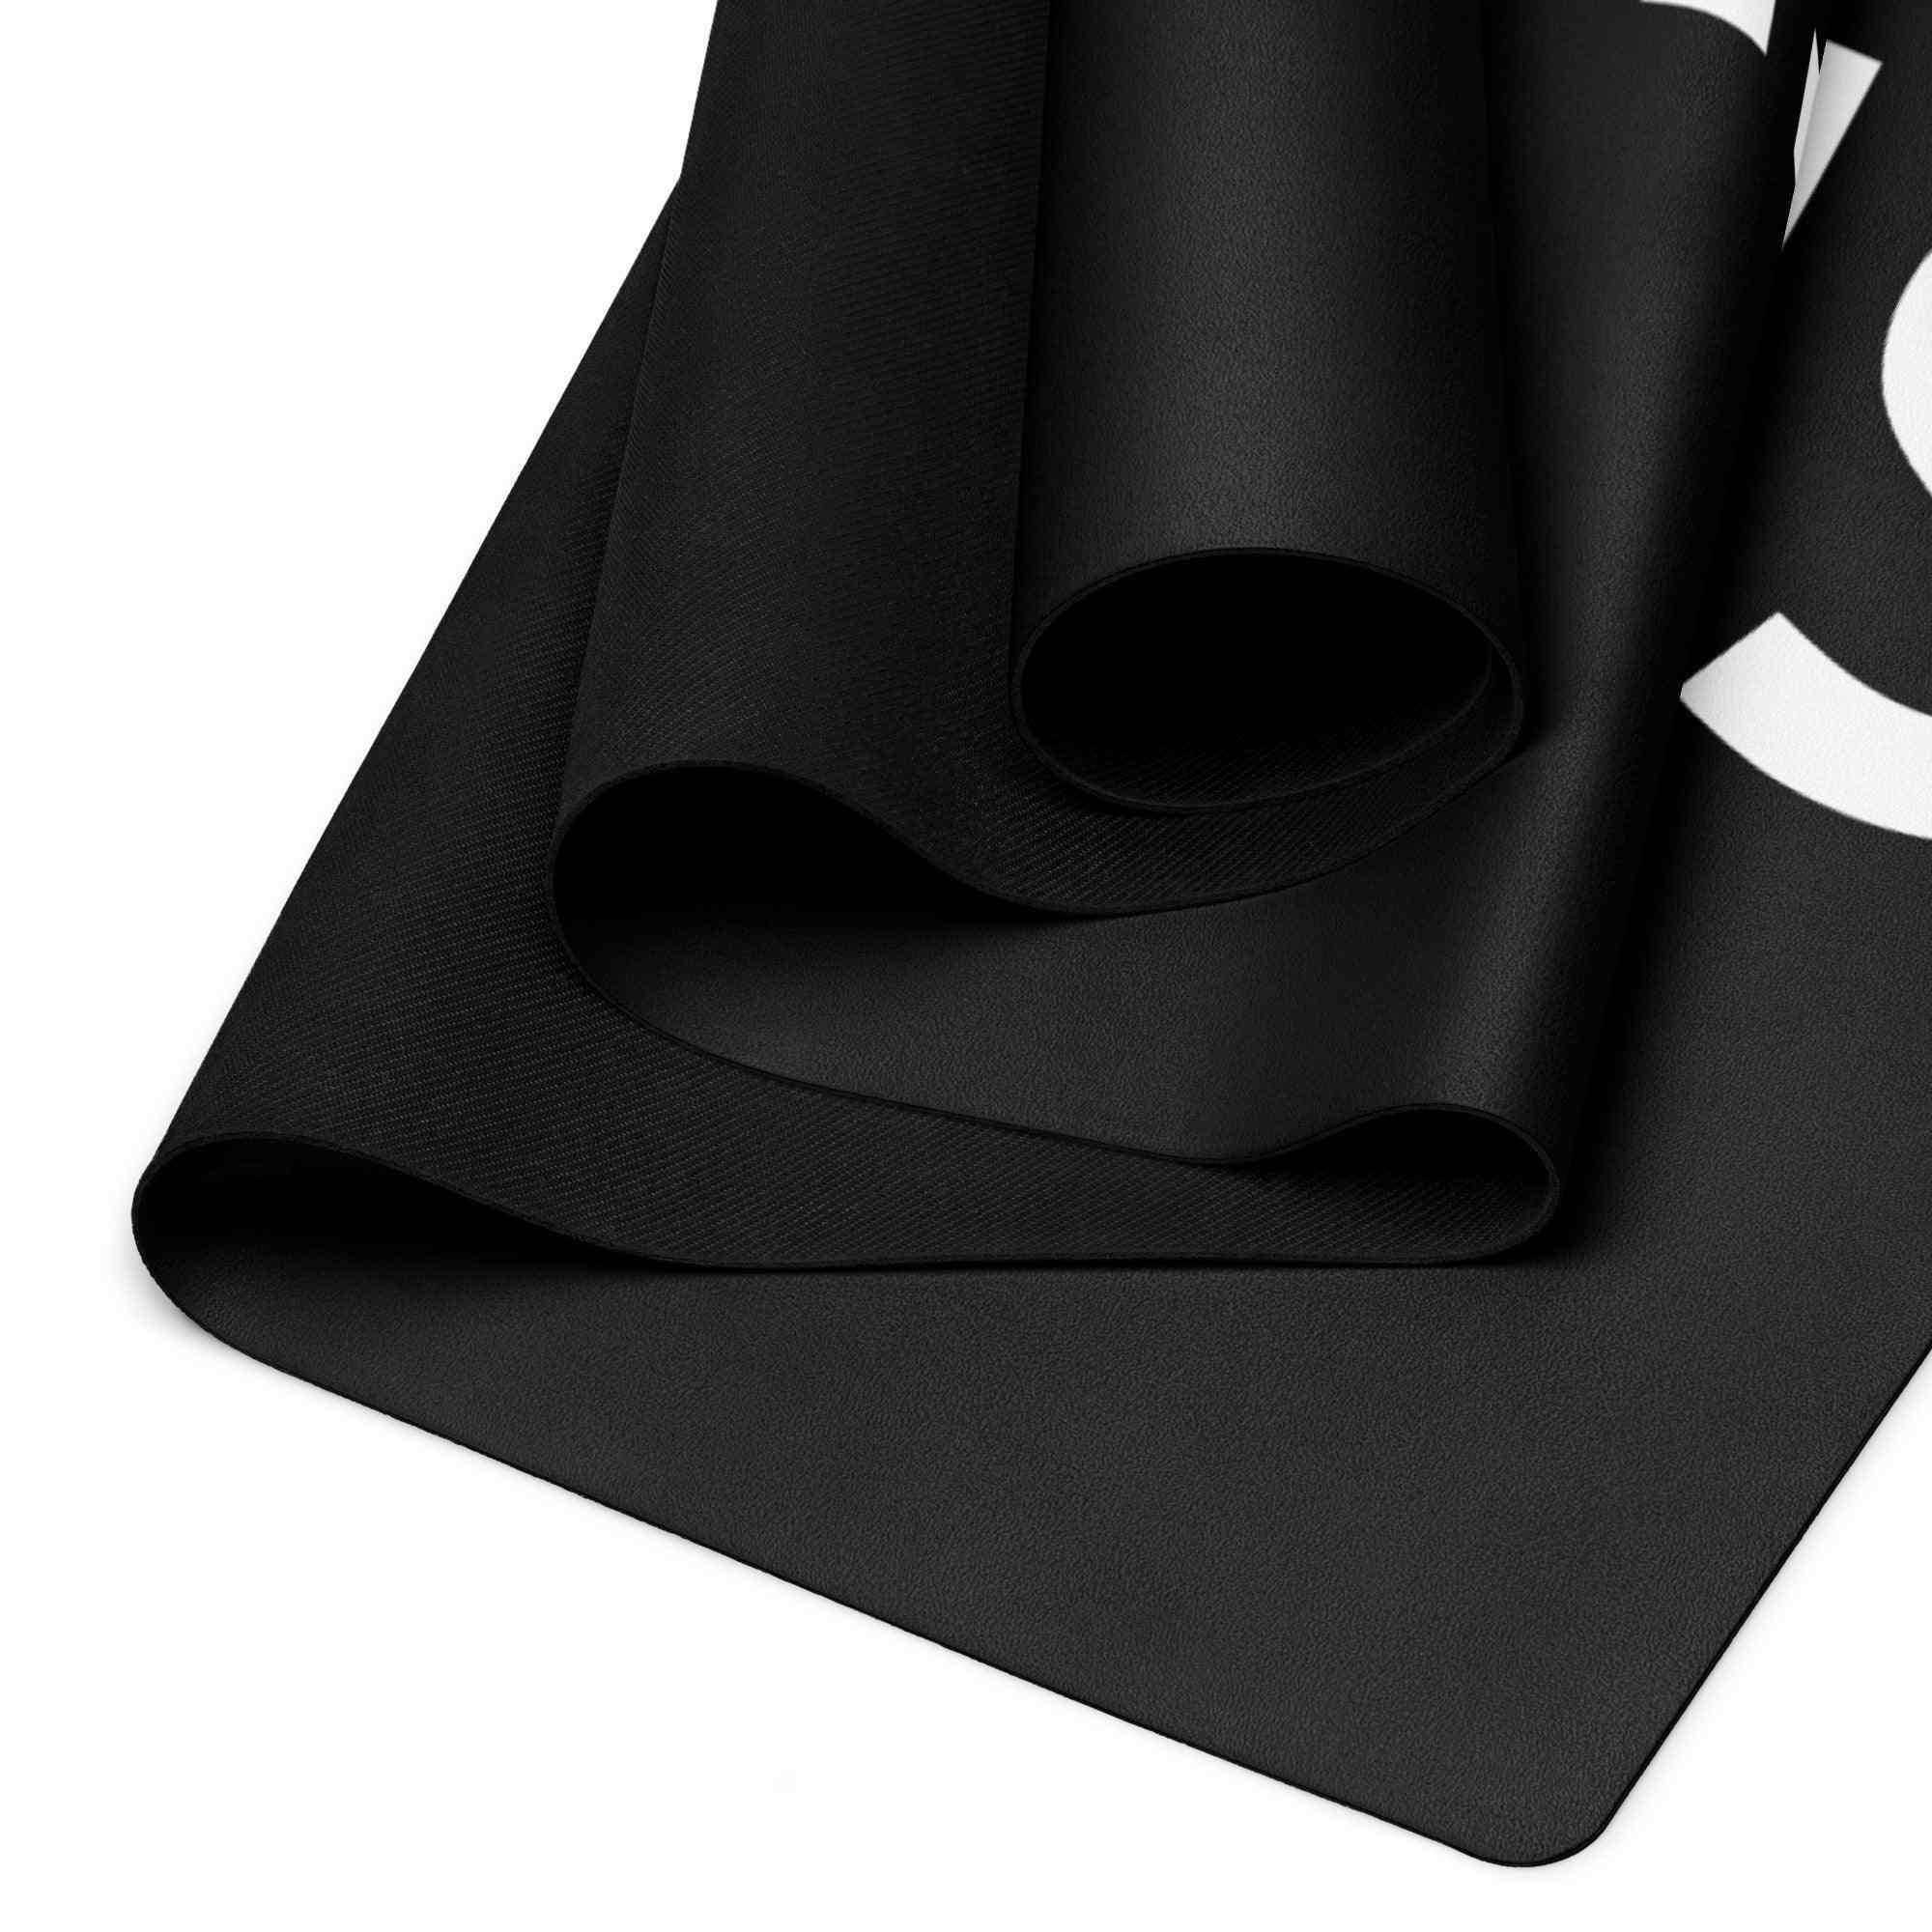 SKEPTICAL. Black Yoga Mat - SKEPTICAL BRANDS